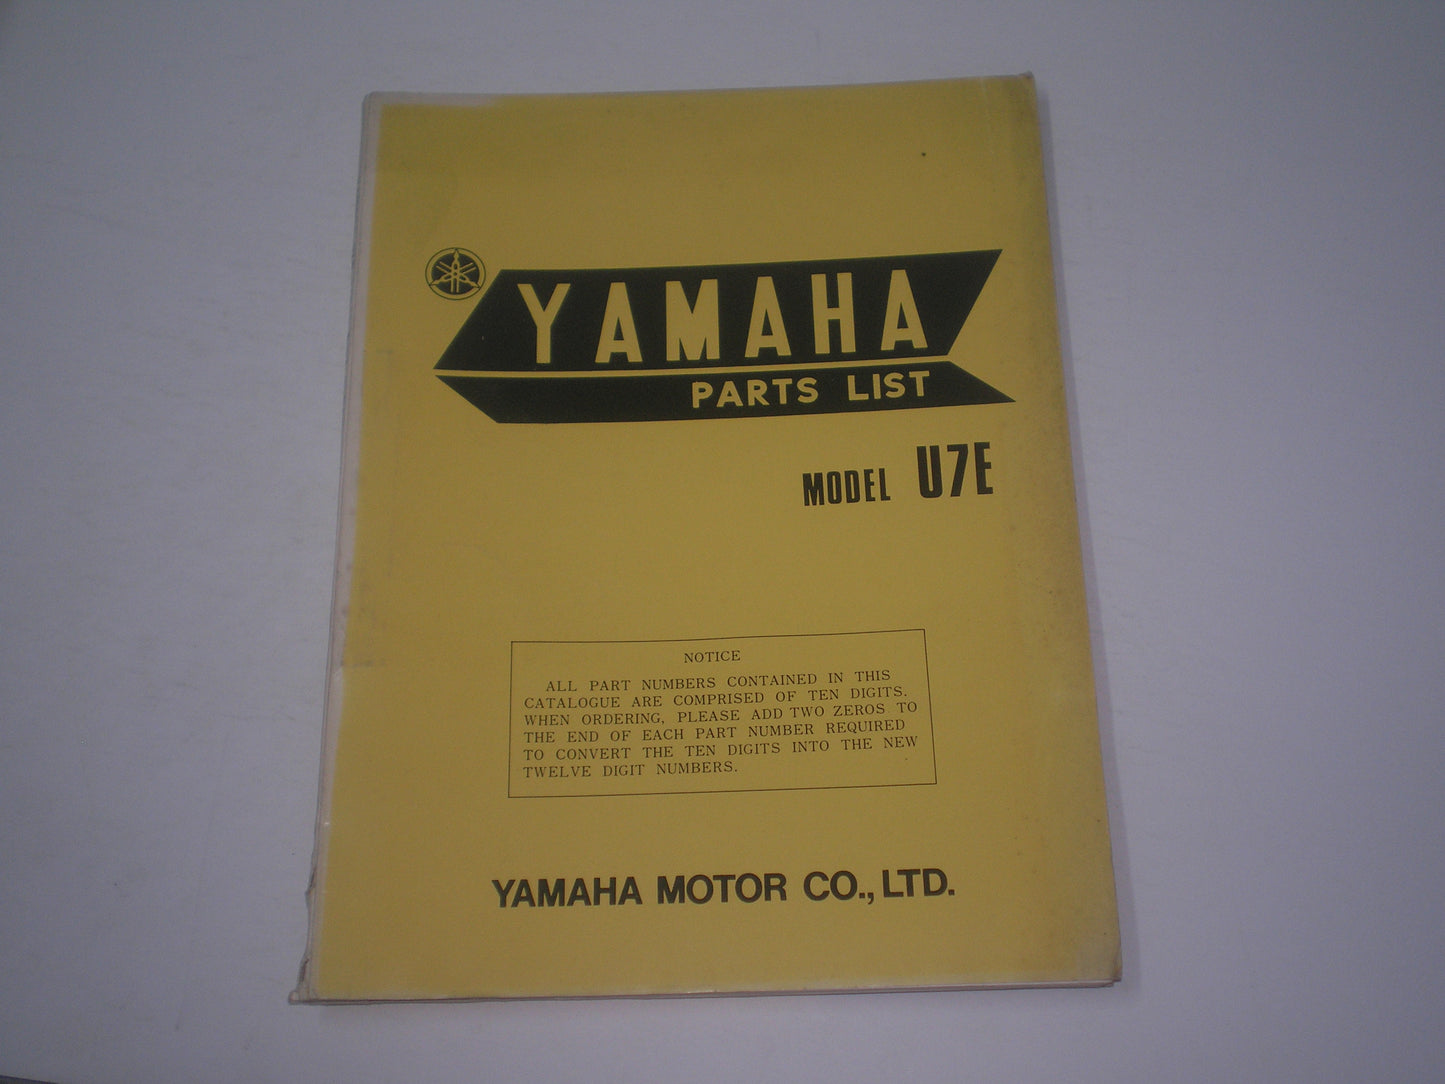 YAMAHA U7E  1972  Parts List / Catalogue   339-28198-60  #1737